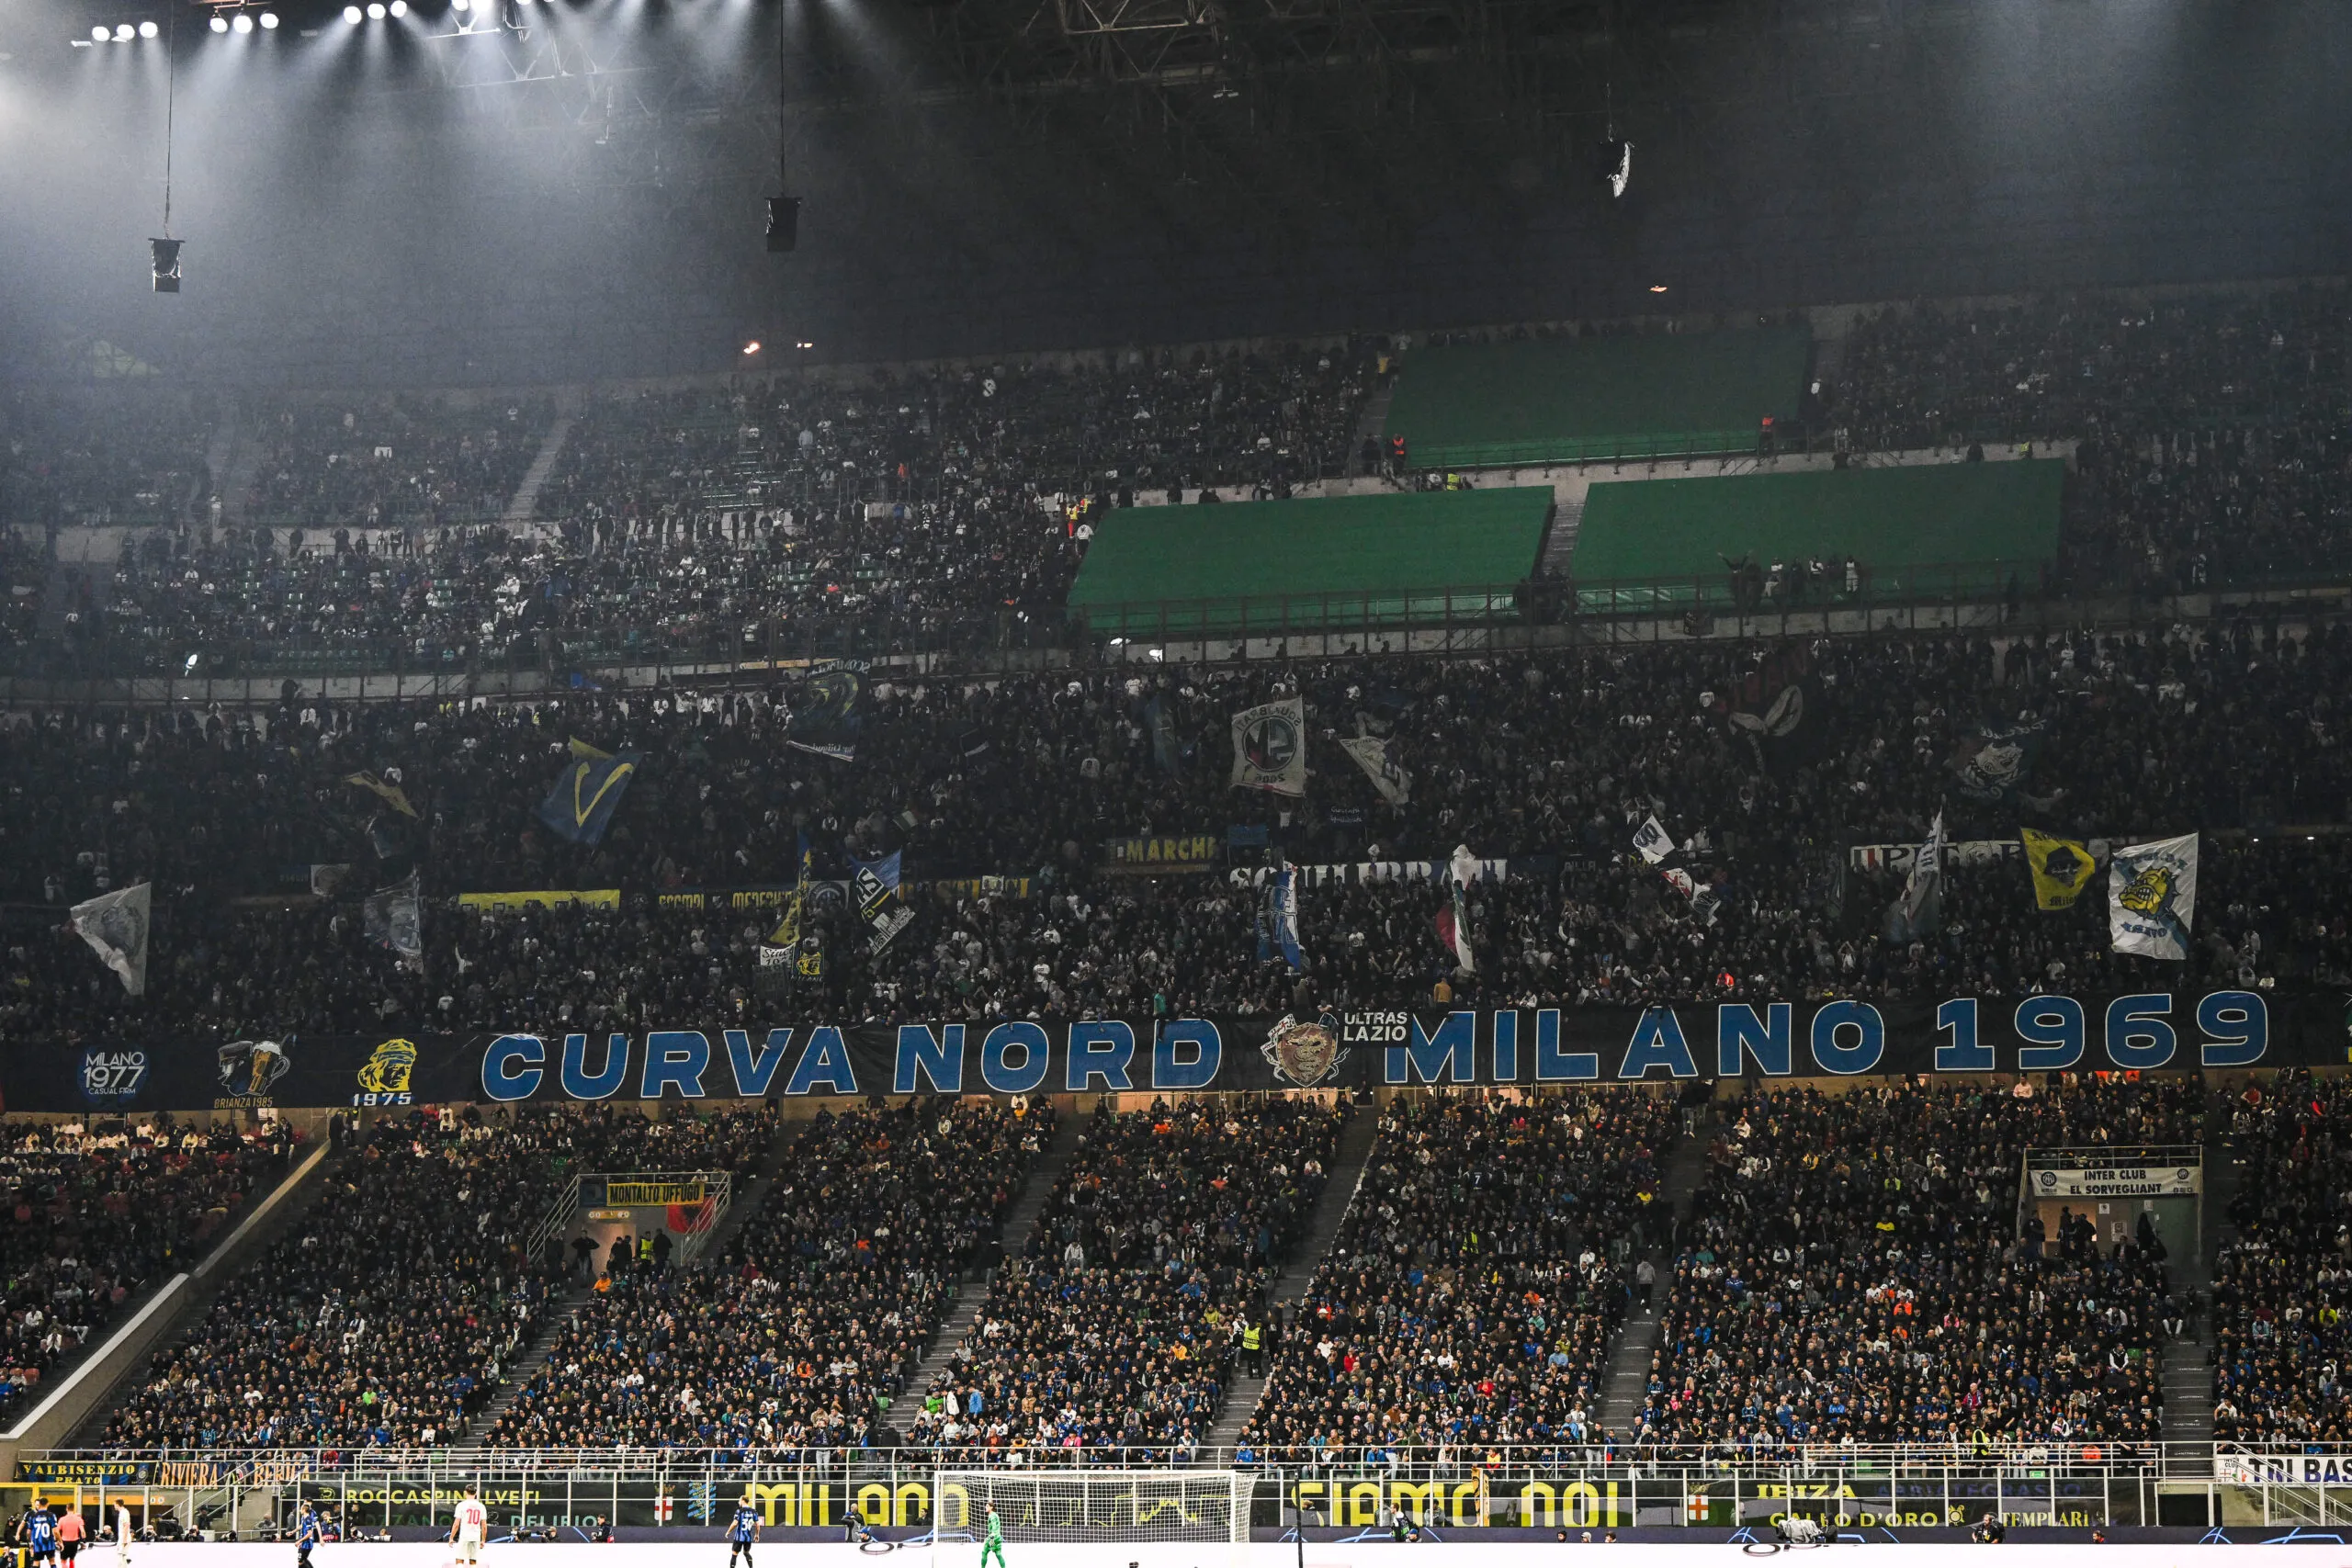 Des bananes gonflables aperçues dans les tribunes durant Inter-Roma